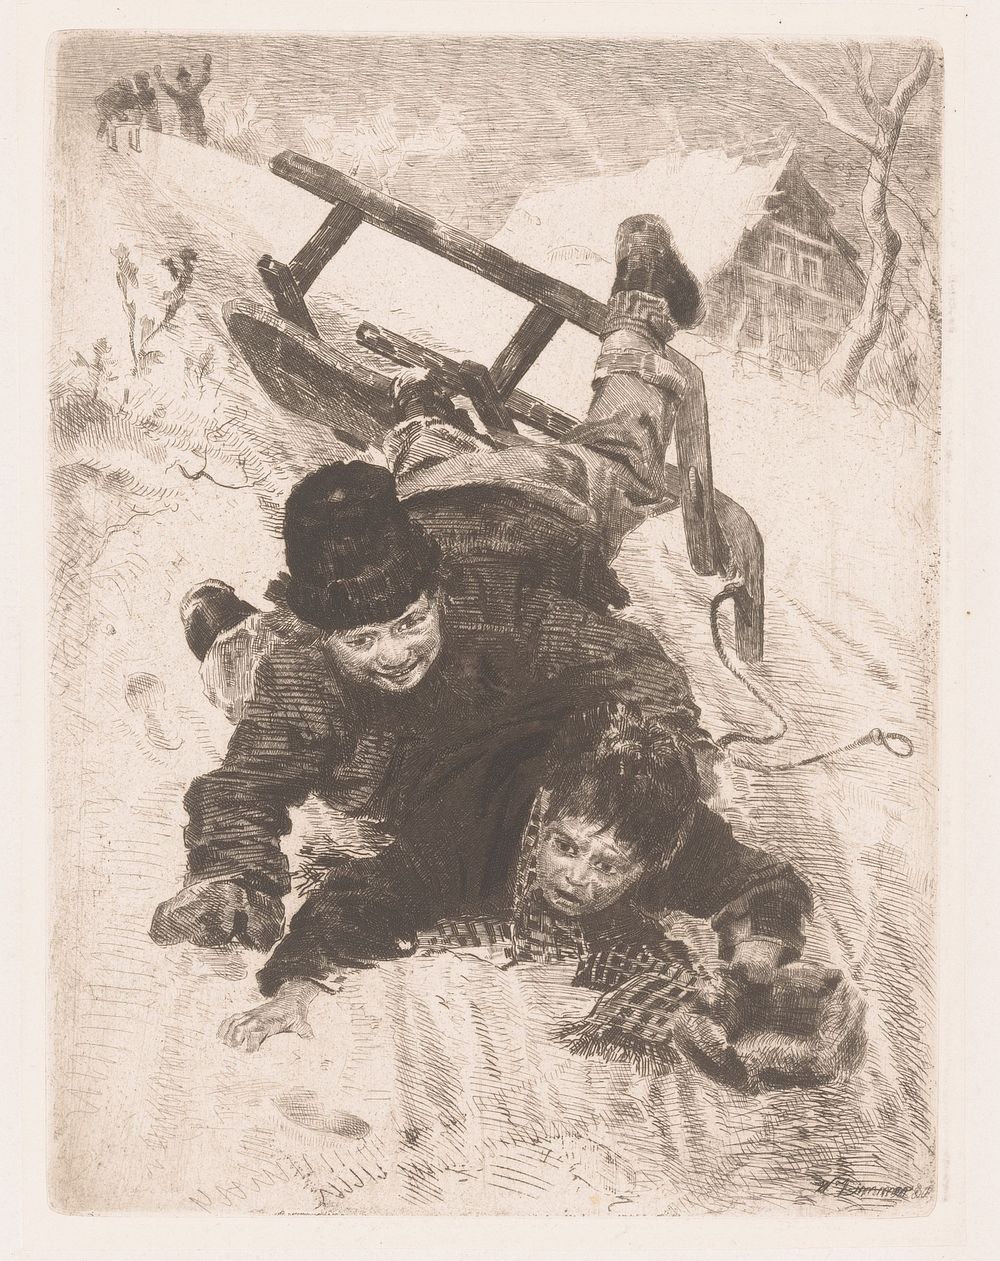 Twee jongens vallen van een slede (1887) by Wilhelm Carl August Zimmer